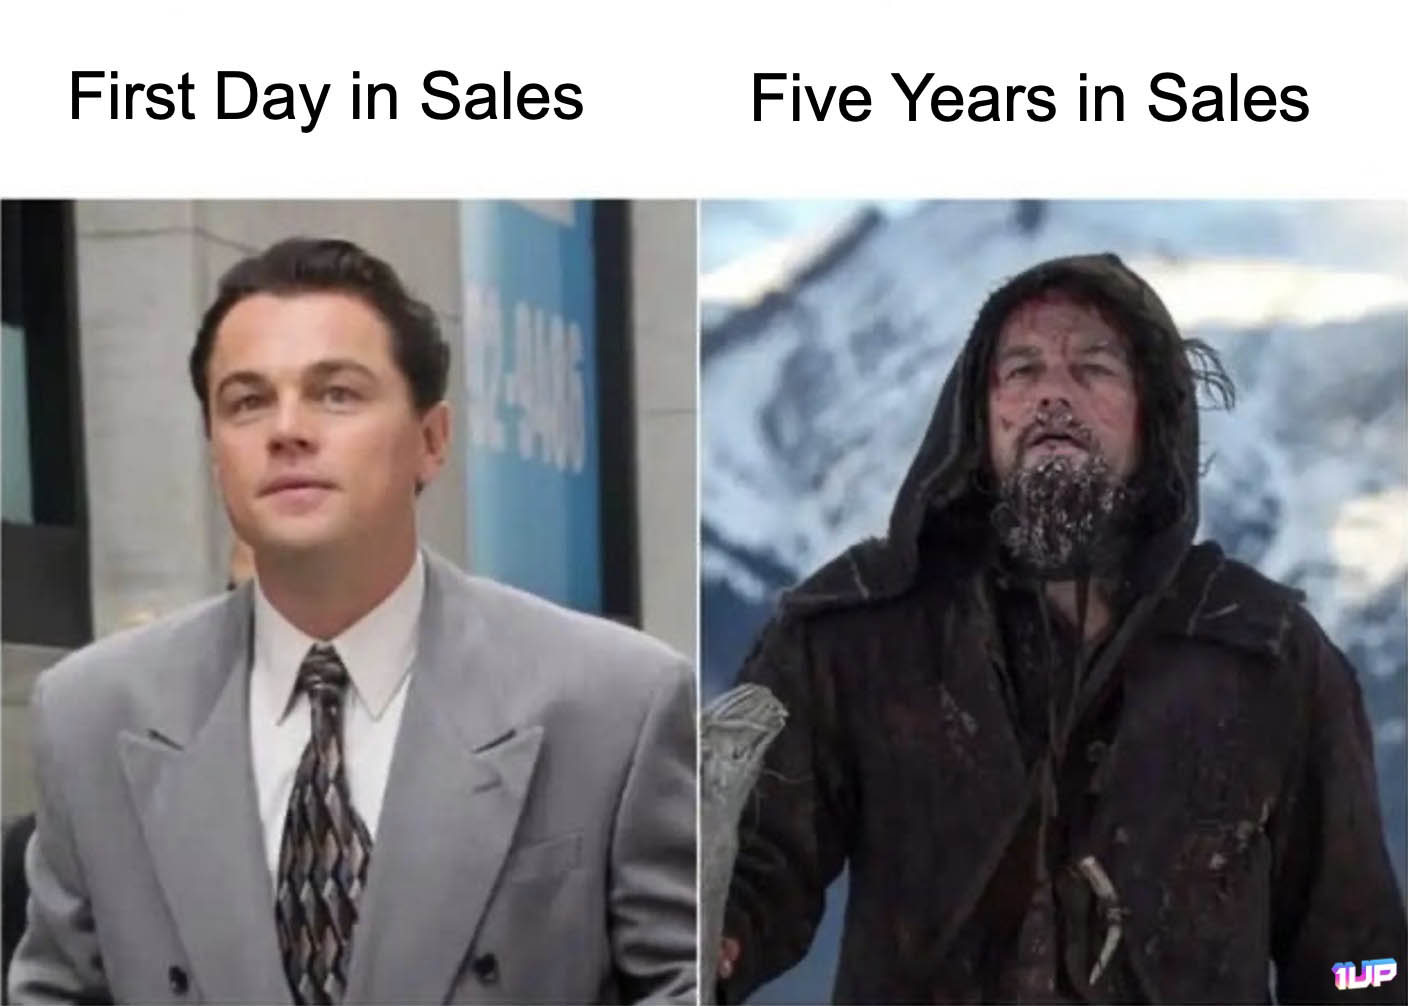 Working in Sales Meme